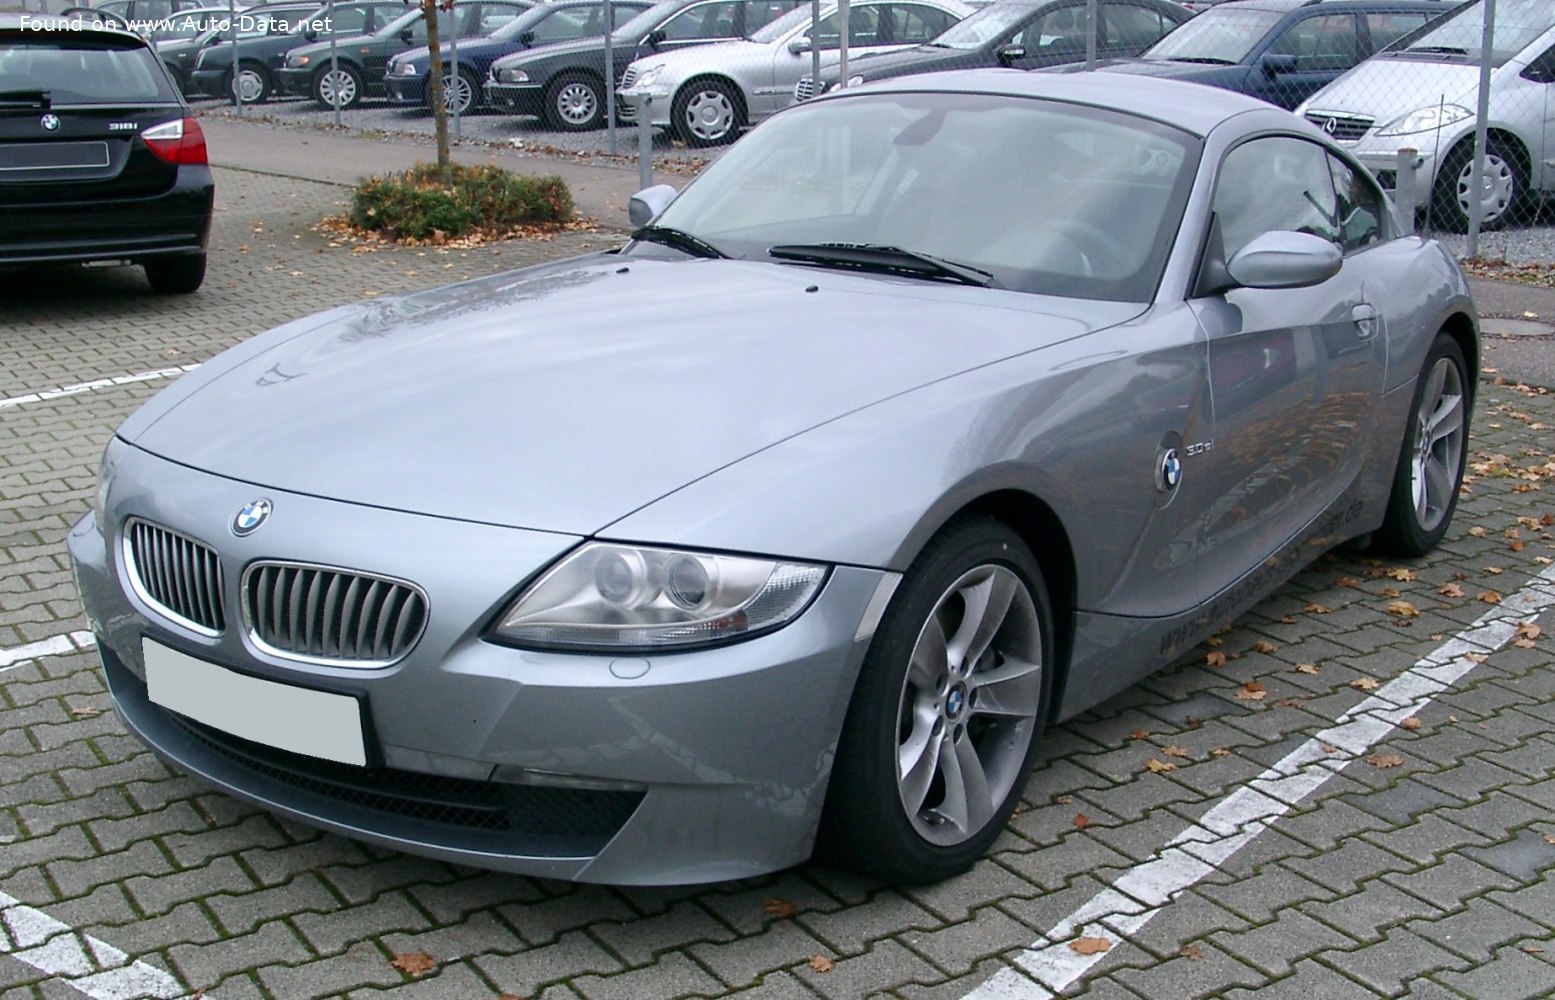 BMW Z4 Coupe (E86) M 3.2 (343 Hp) | Technical specs, data, fuel consumption, Dimensions